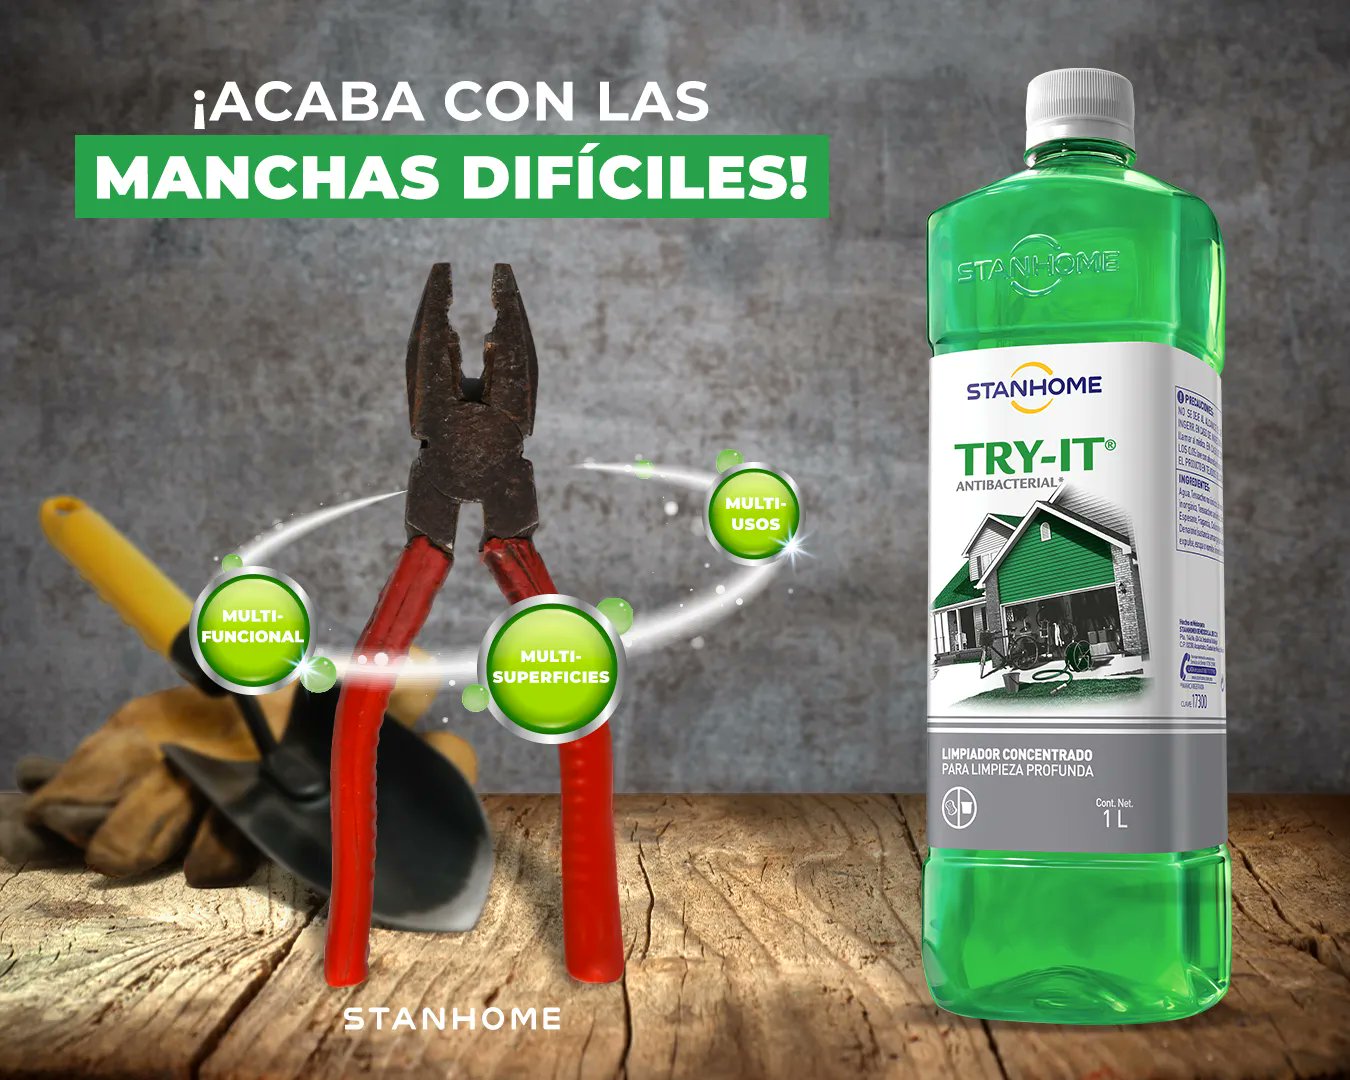 Stanhome México on X: ¡Haz una limpieza profunda con Try-it! ✨ Descubre su  poder antibacterial y quita hasta las manchas más difíciles ✓ #Stanhome  #MerecesloMejor #HomeCare  / X